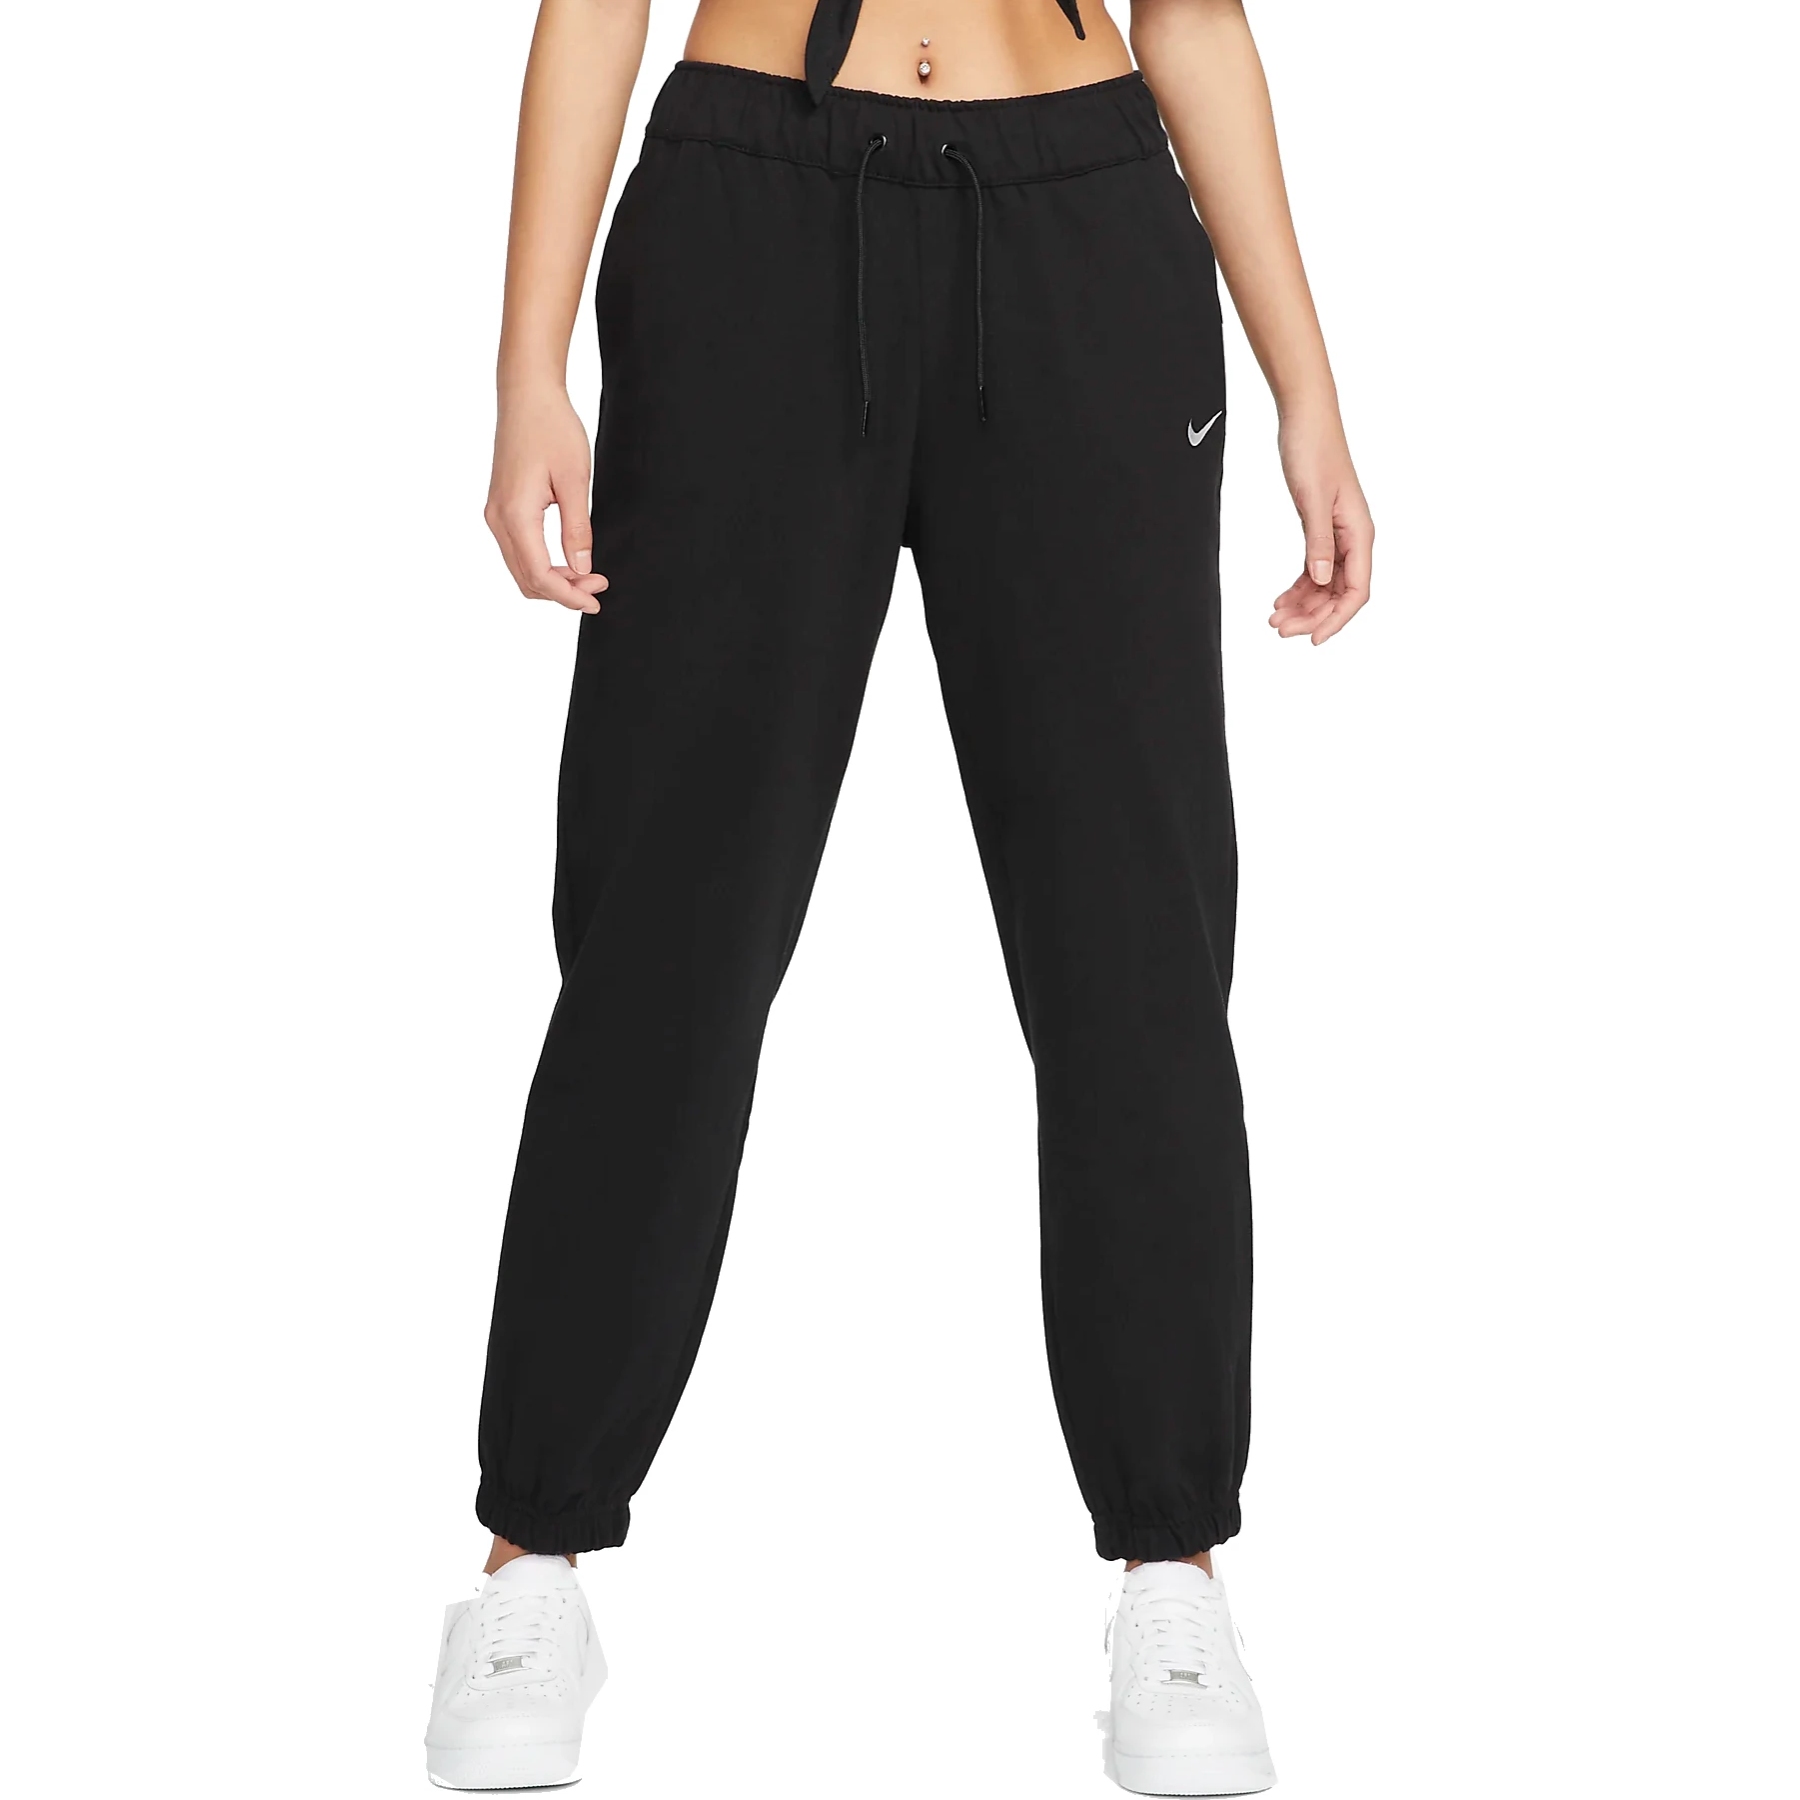 Immagine di Nike Pantaloni da Jogging Donna - Sportswear Easy - nero/bianco DM6419-010